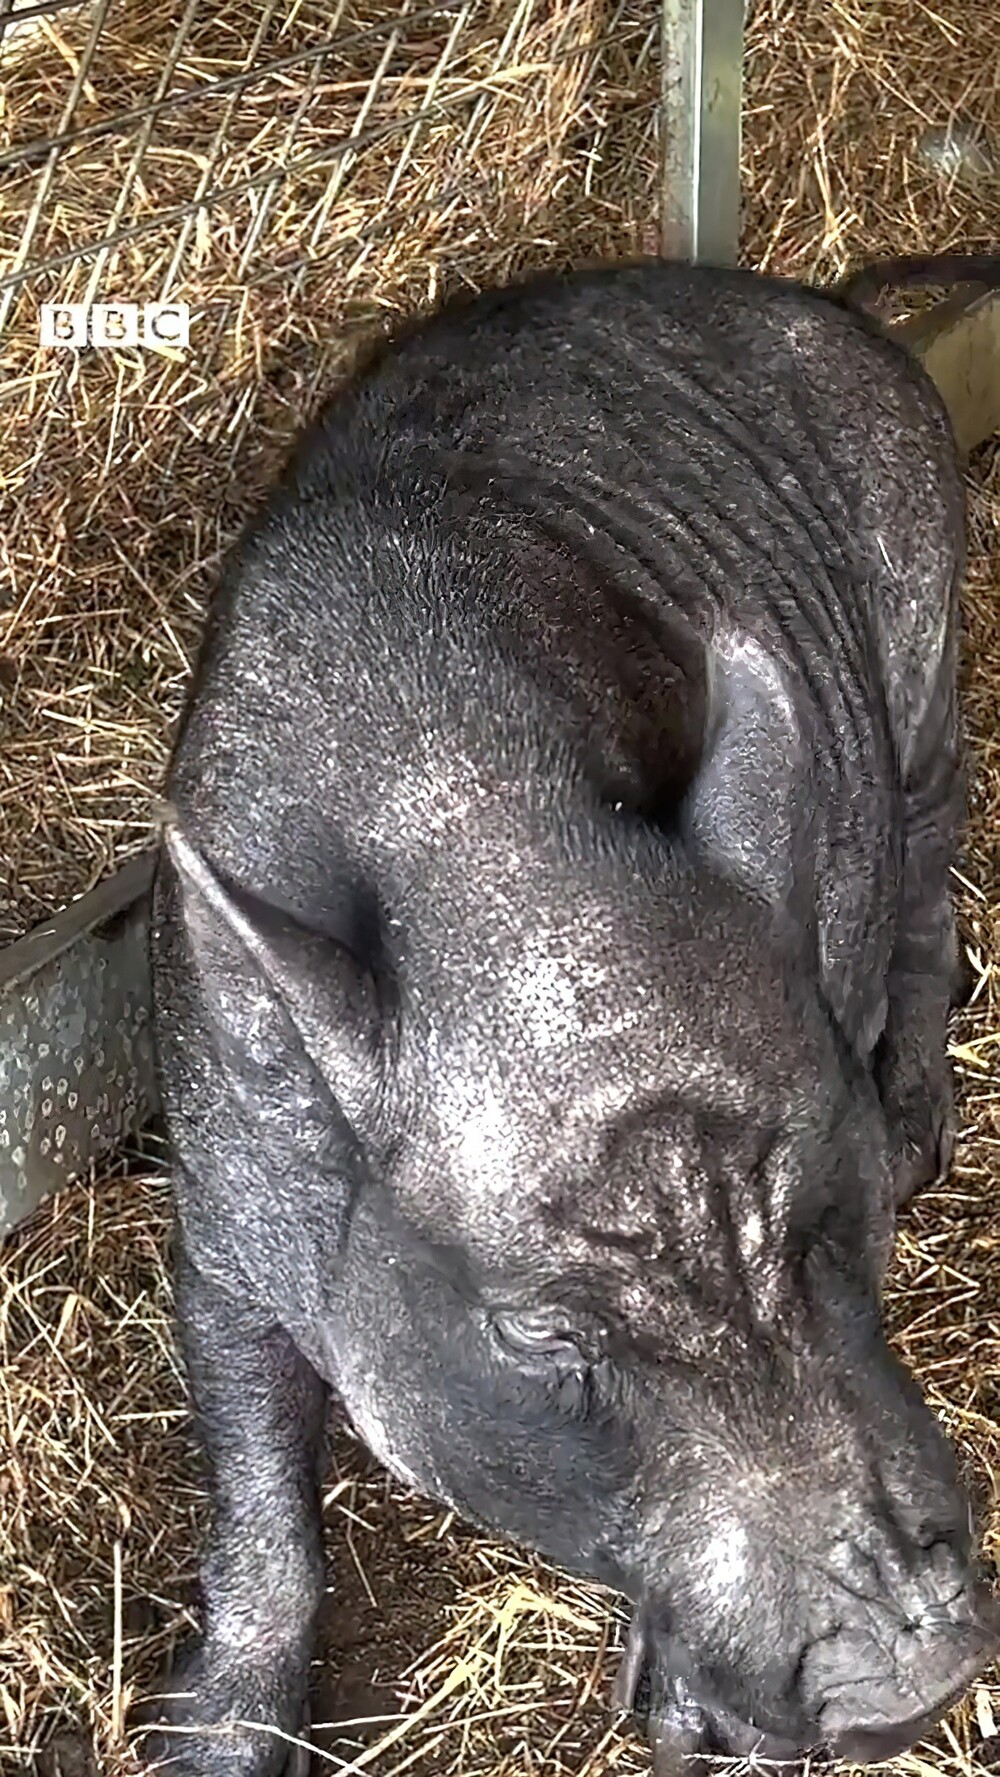 В Великобритании пришлось спасать свинью, которую держали в однушке и кормили фастфудом